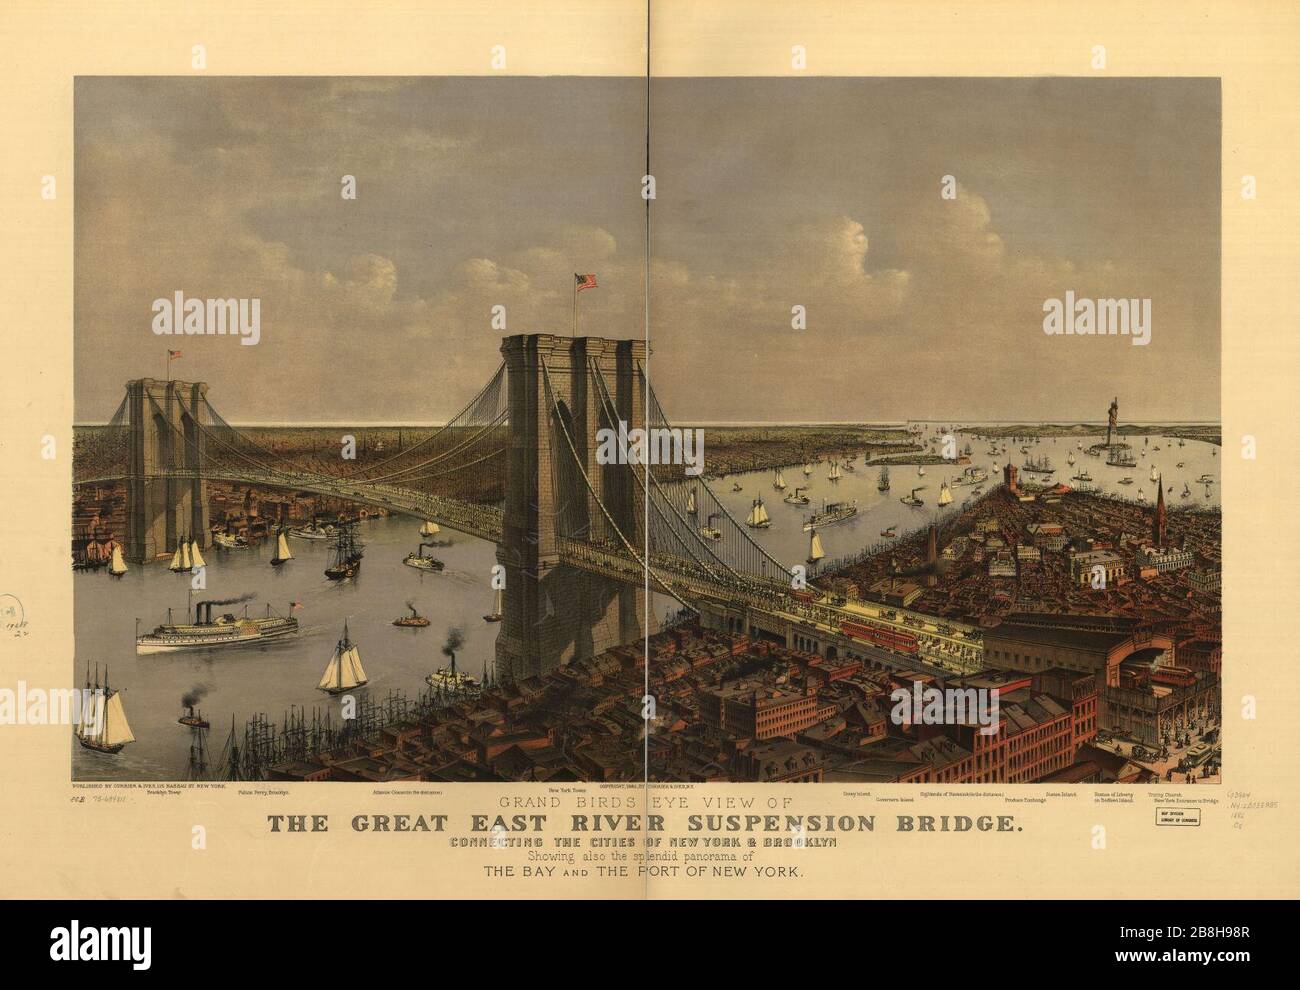 Vista dall'alto del Great East River Suspension Bridge. Collegando le città di New York e Brooklyn si gode anche lo splendido panorama della baia e di parte di New York. Foto Stock